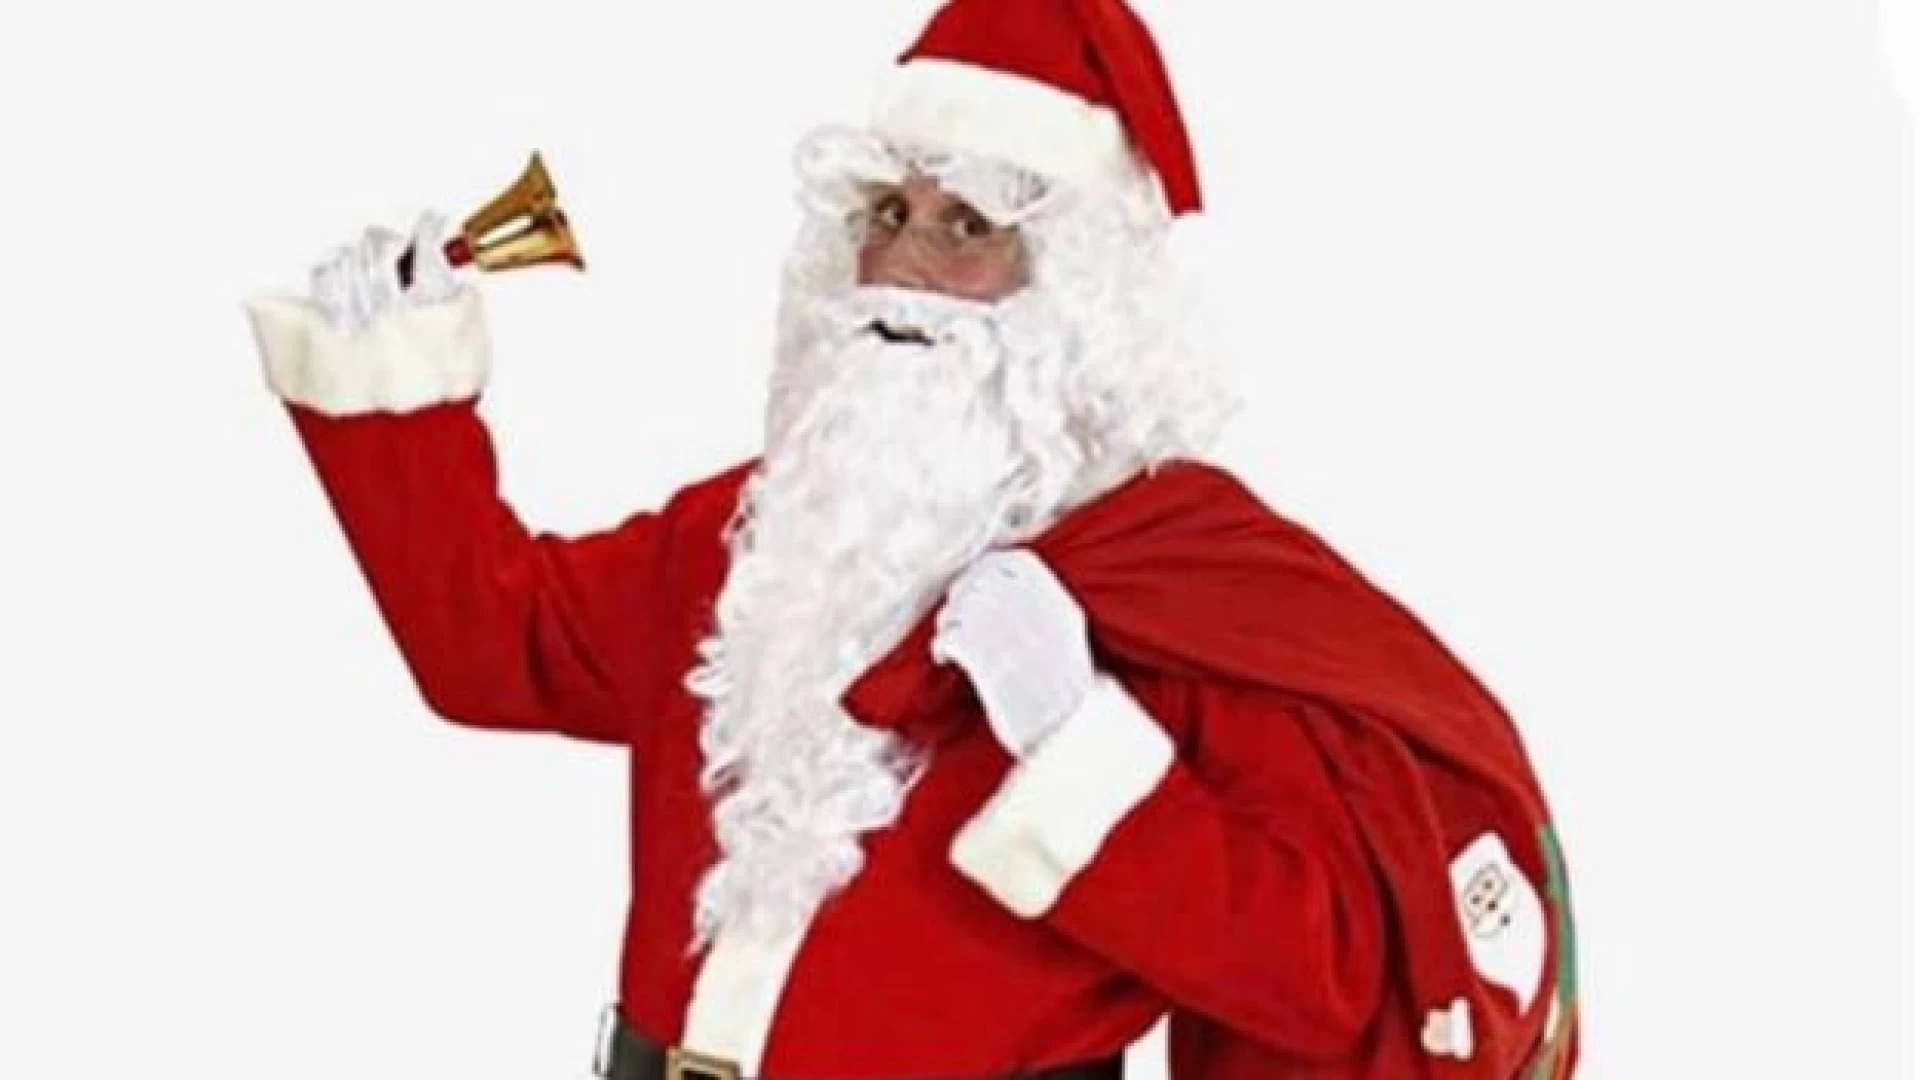 Filignano: il 22 dicembre Babbo Natale tra i bambini del posto per consegnare regali. L’iniziativa dei consiglieri di minoranza.